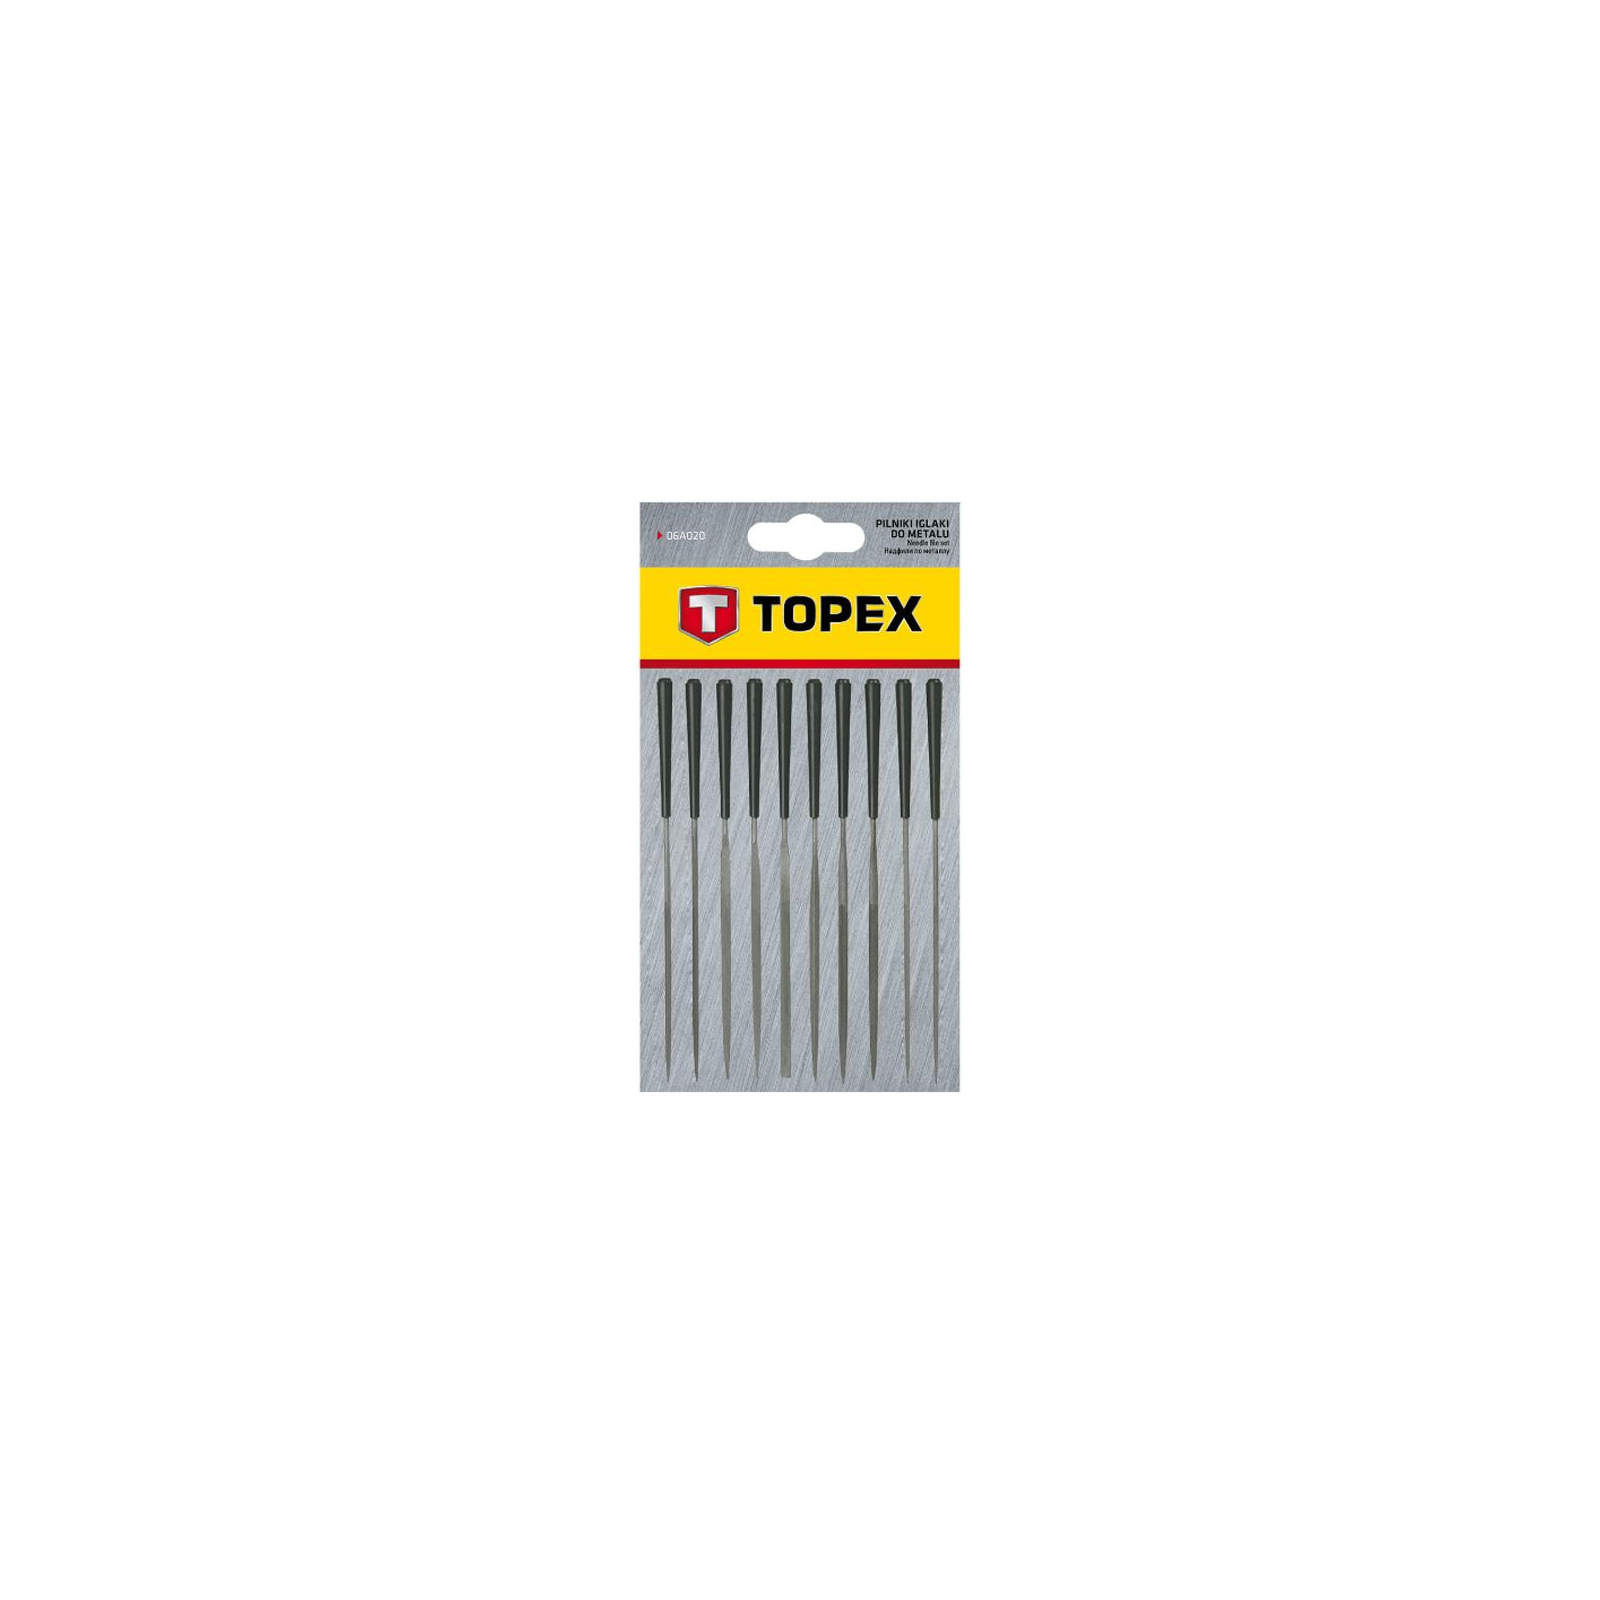 Набор надфилей Topex игольчатые по металлу набор 10 шт. (06A015) изображение 2